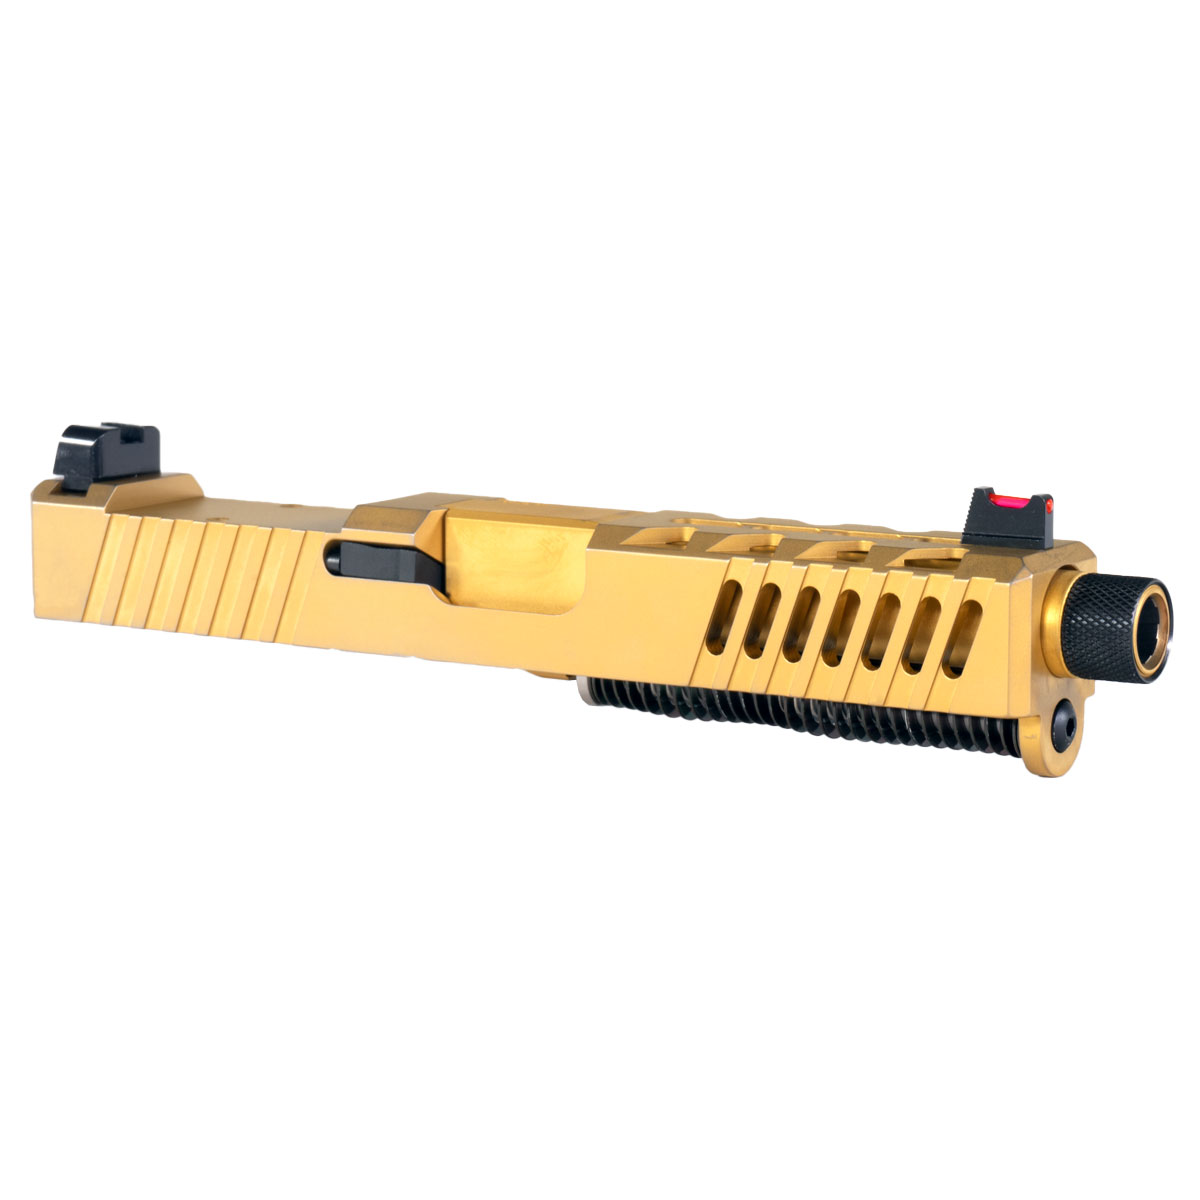 DTT 'AU-197' 9mm Complete Slide Kit - Glock 19 Gen 1-3 Compatible